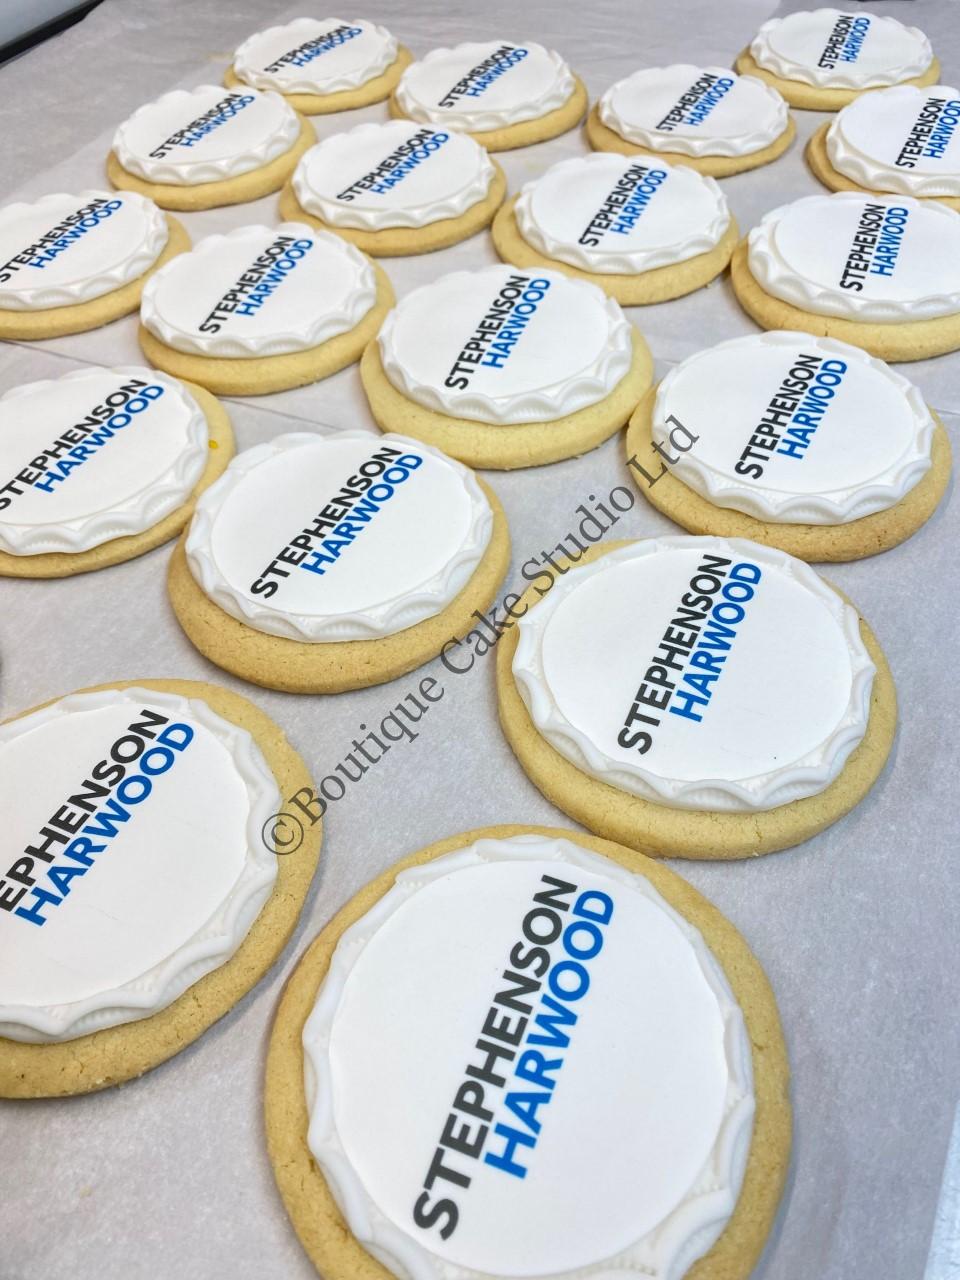 Corporate Branded Cookies